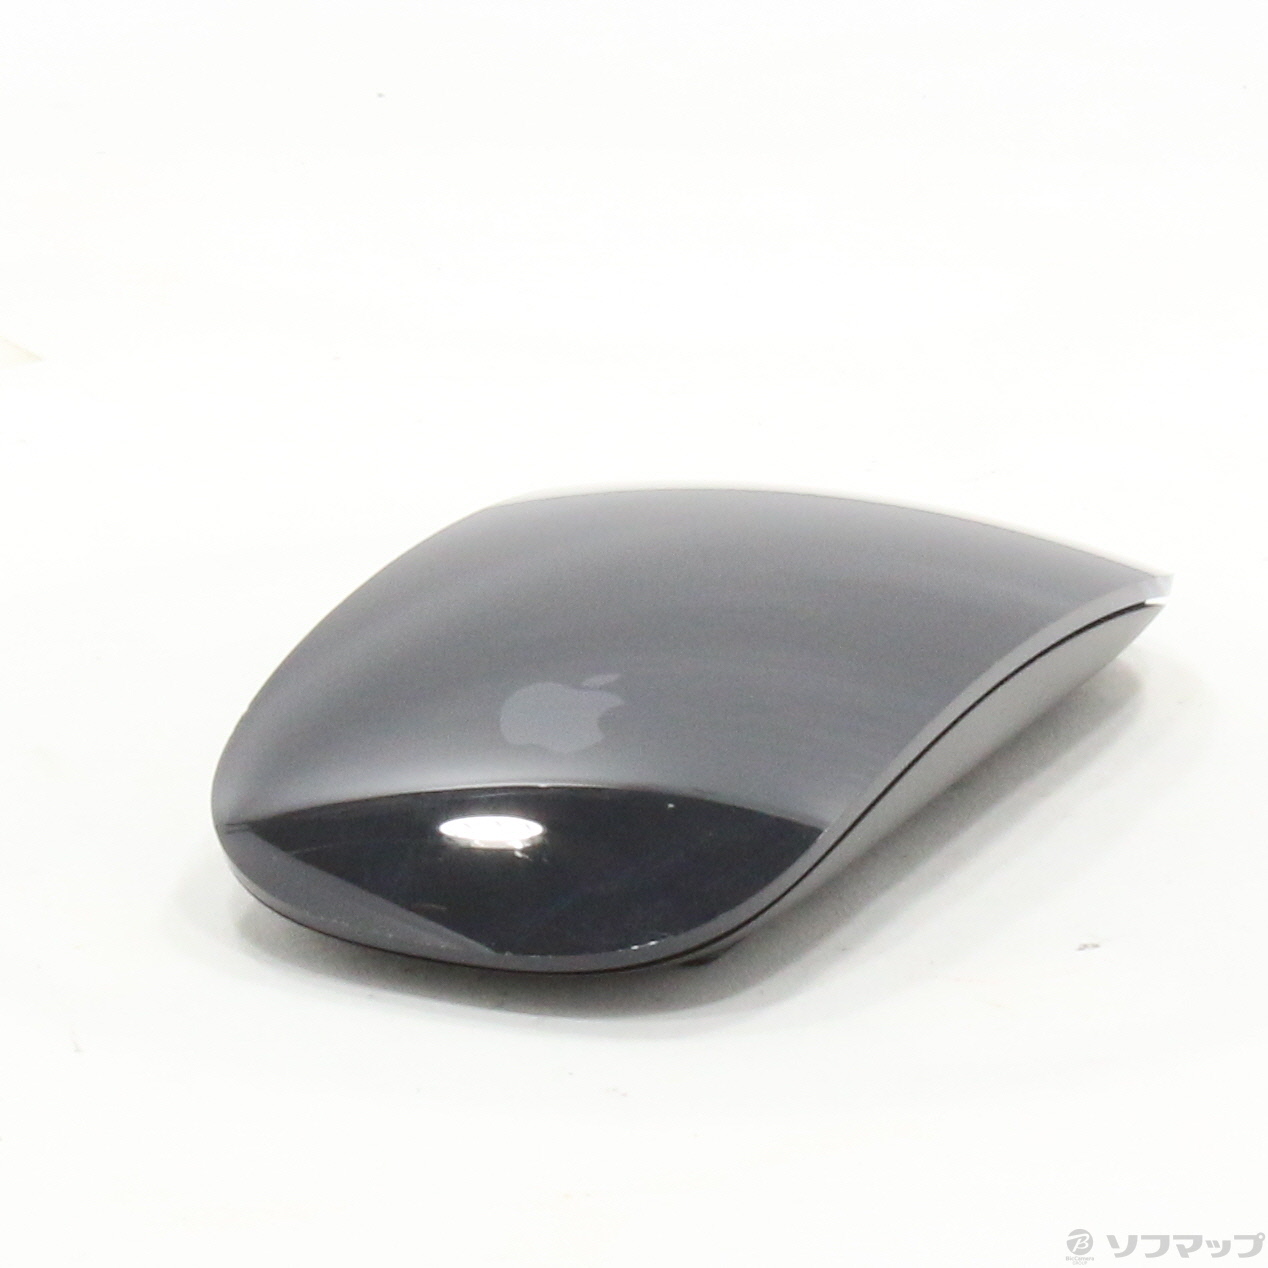 Apple Magic Mouse2 MRME2J/A